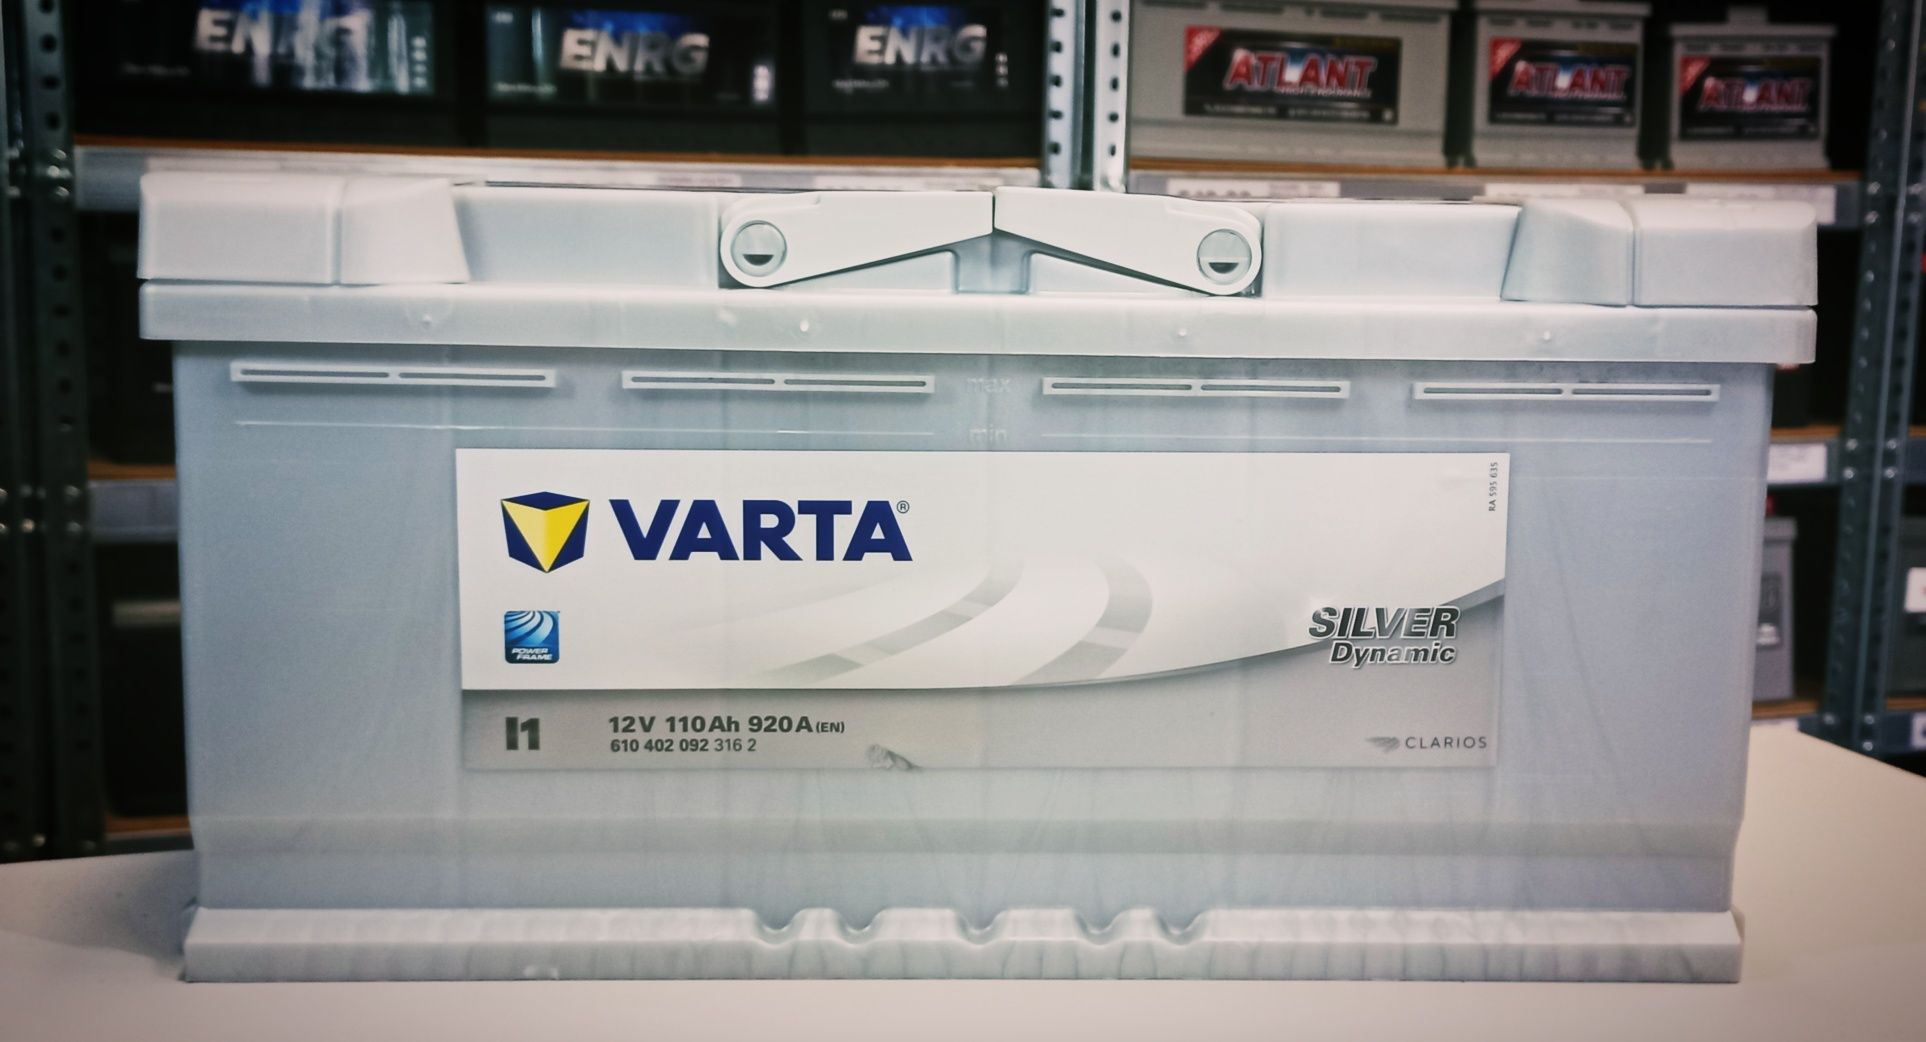 Akumulator Varta Silver 12V 110AH 920A NOWY GWARANCJA ducato